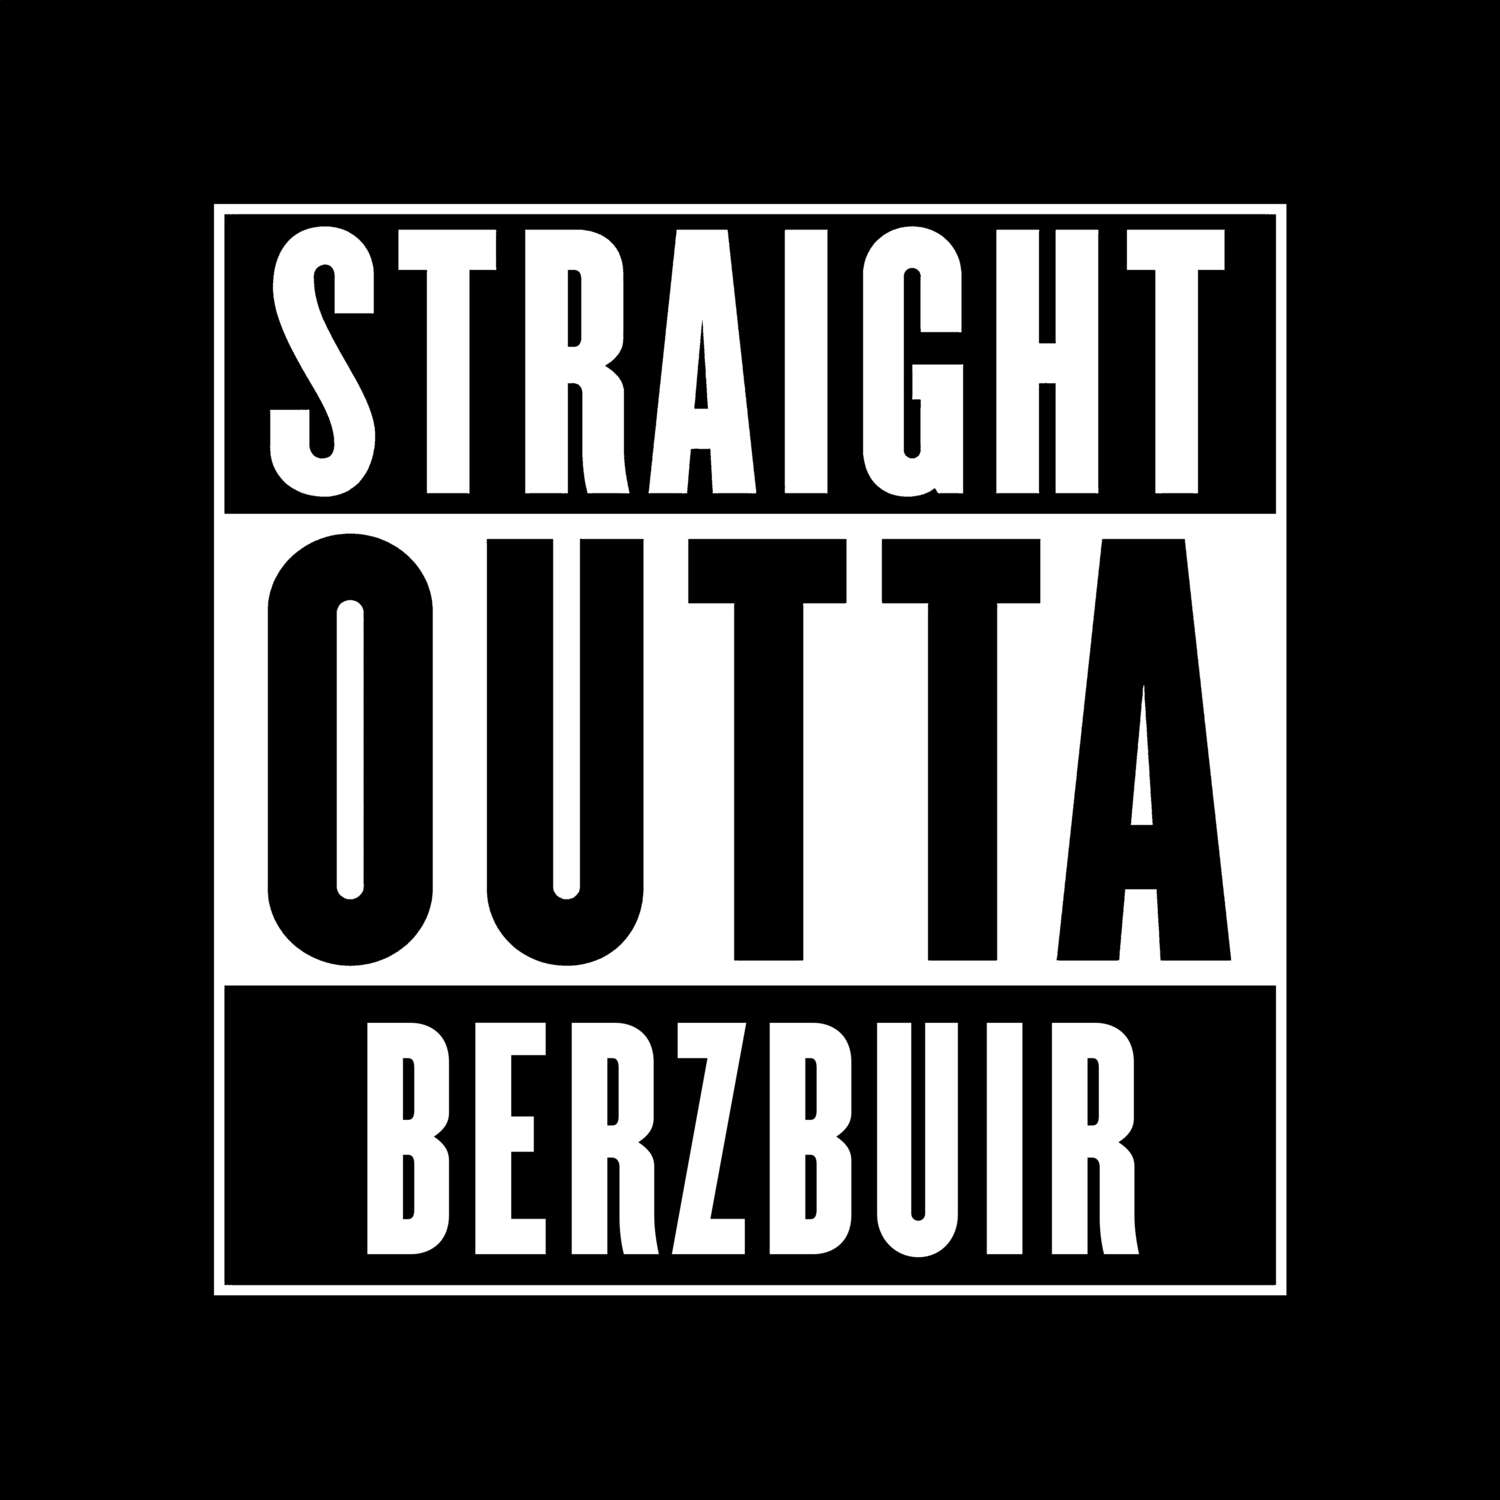 Berzbuir T-Shirt »Straight Outta«